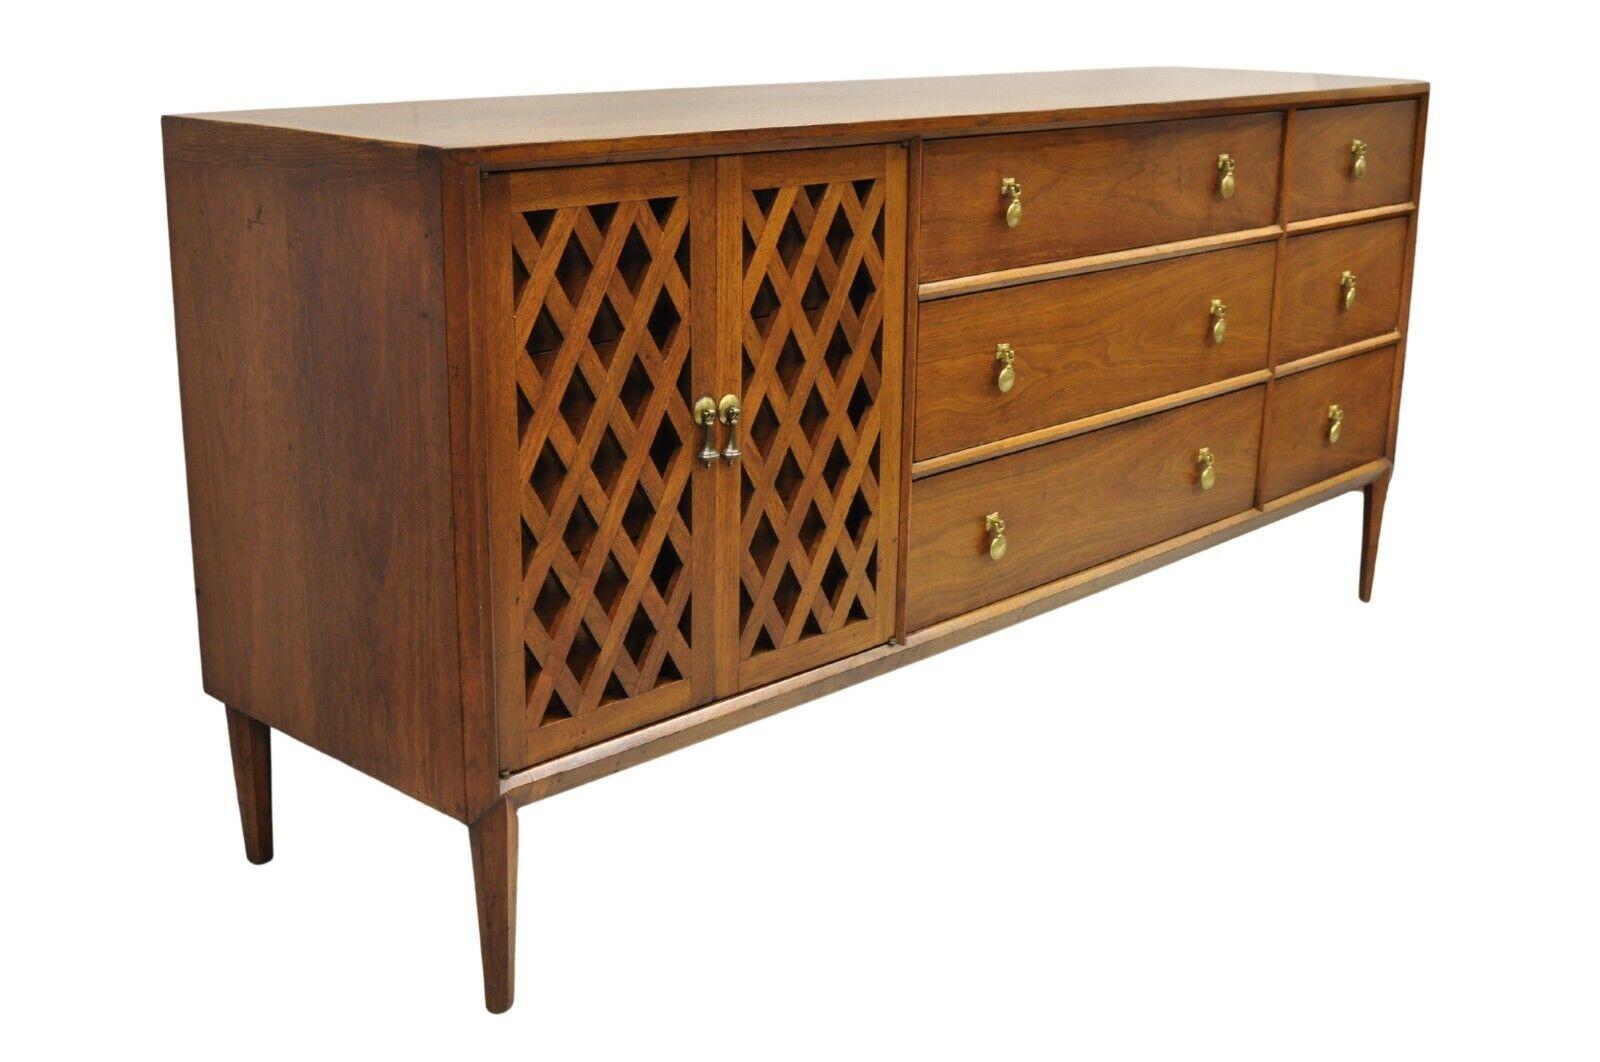 John Stuart Casalinda Collection für Mt Airy Furniture Vintage Mid Century Modern Walnut Credenza Cabinet Triple Dresser. Das Möbelstück verfügt über 9 schwalbenschwanzförmige Schubladen, Messinggriffe, schöne saubere Winkel an den Seiten, schöne